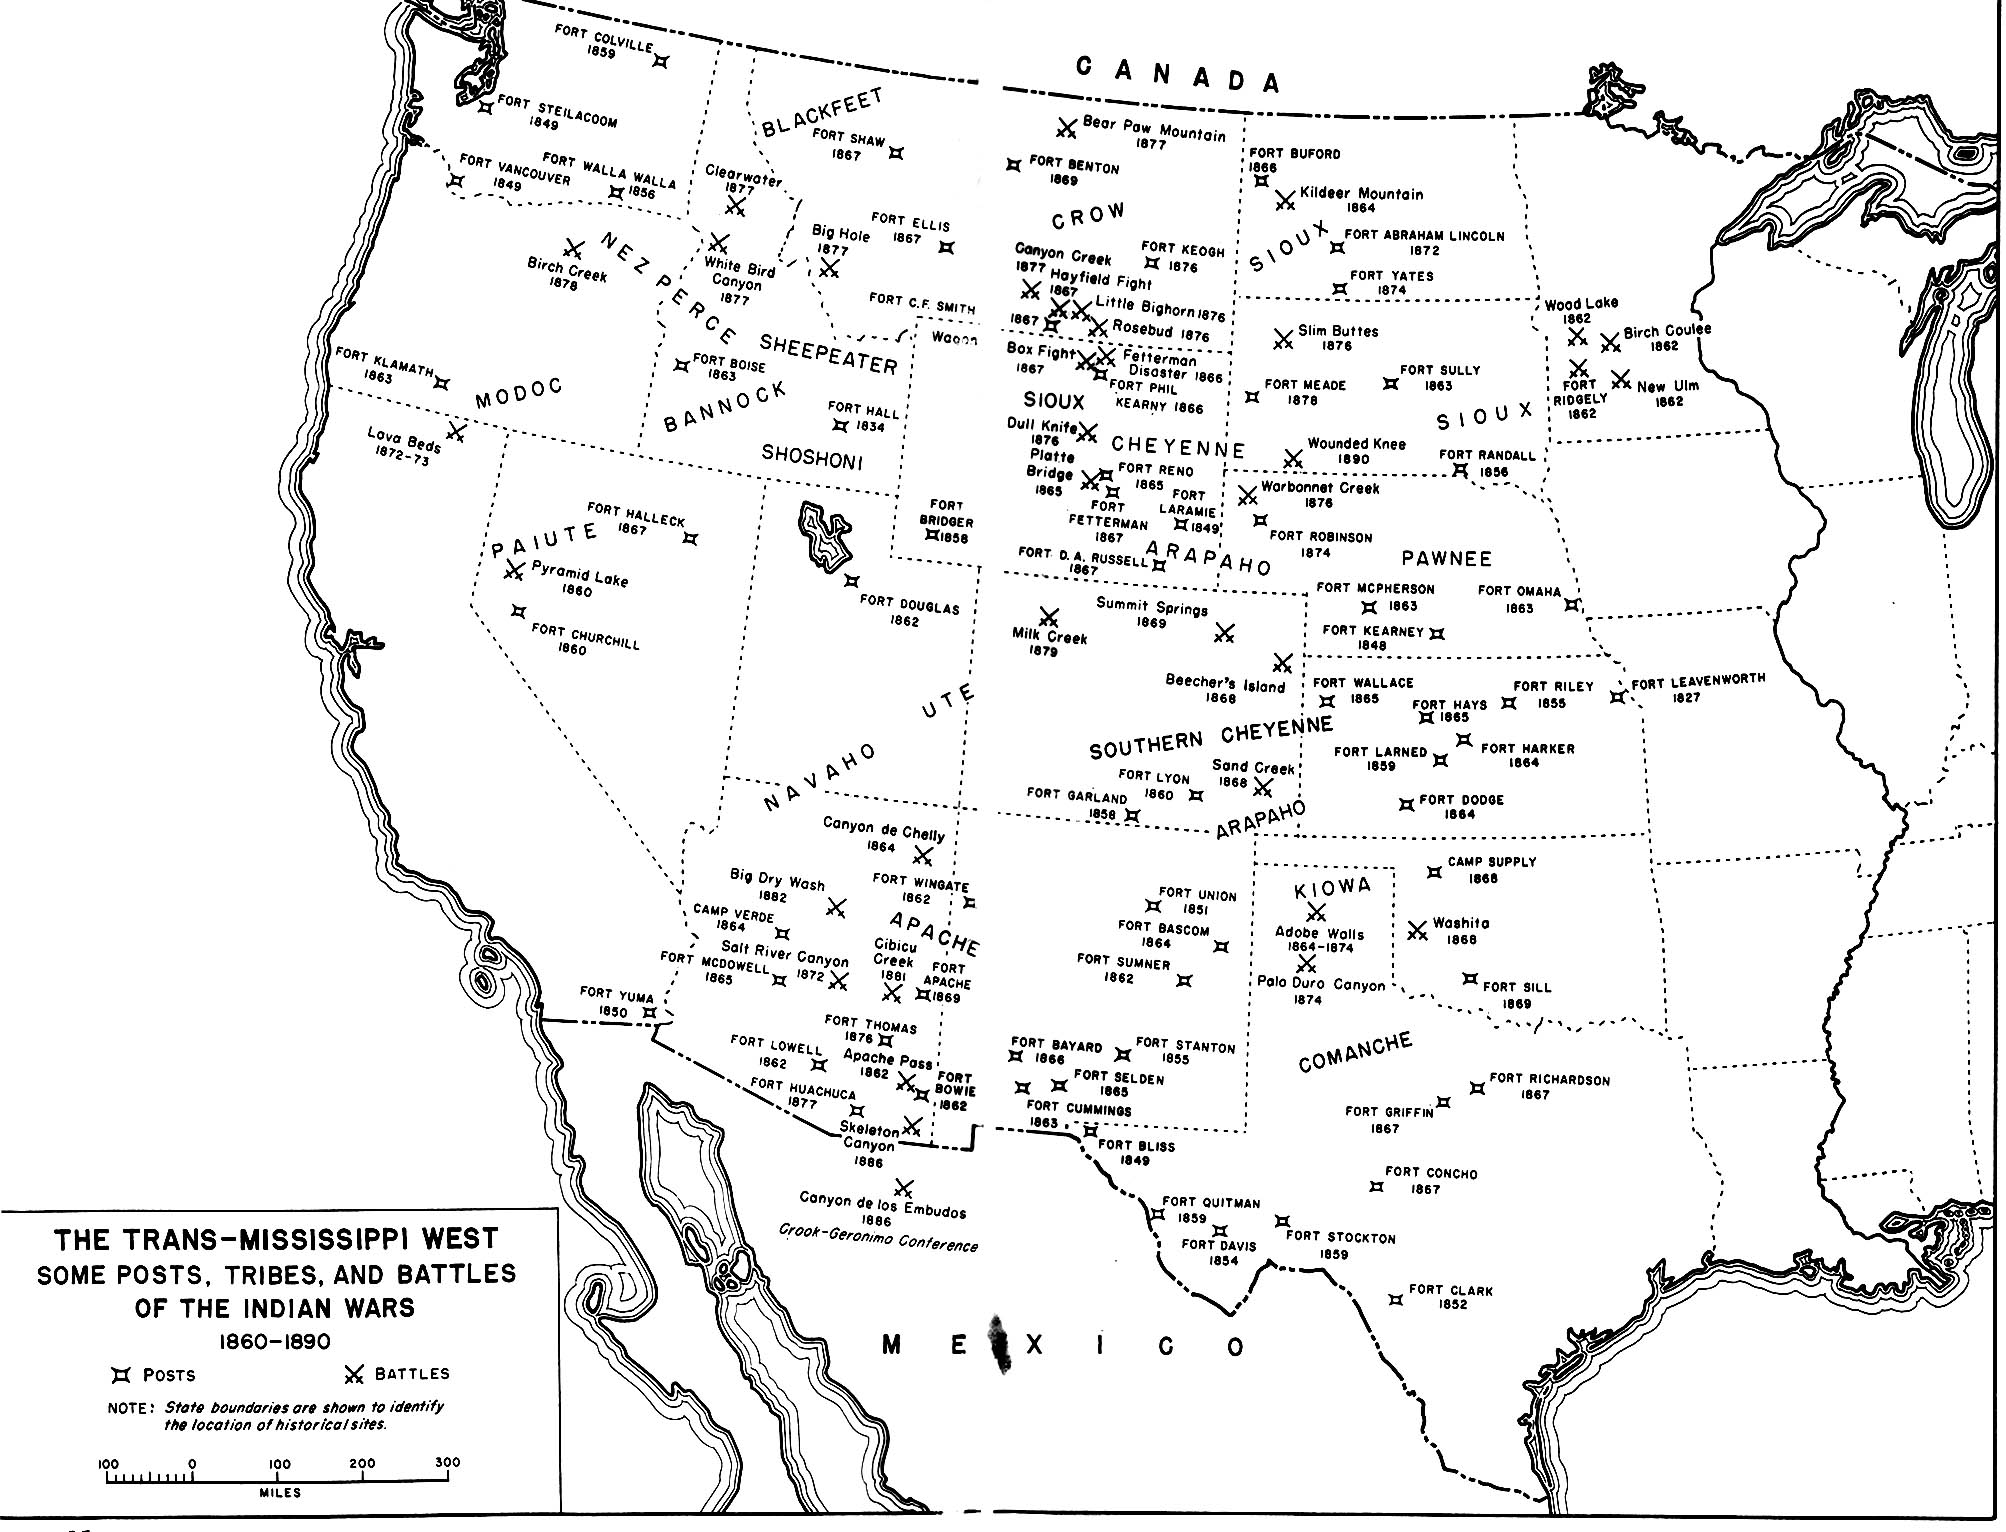 Некоторые посты, племена и сражения войн с индейцами, 1860-1890